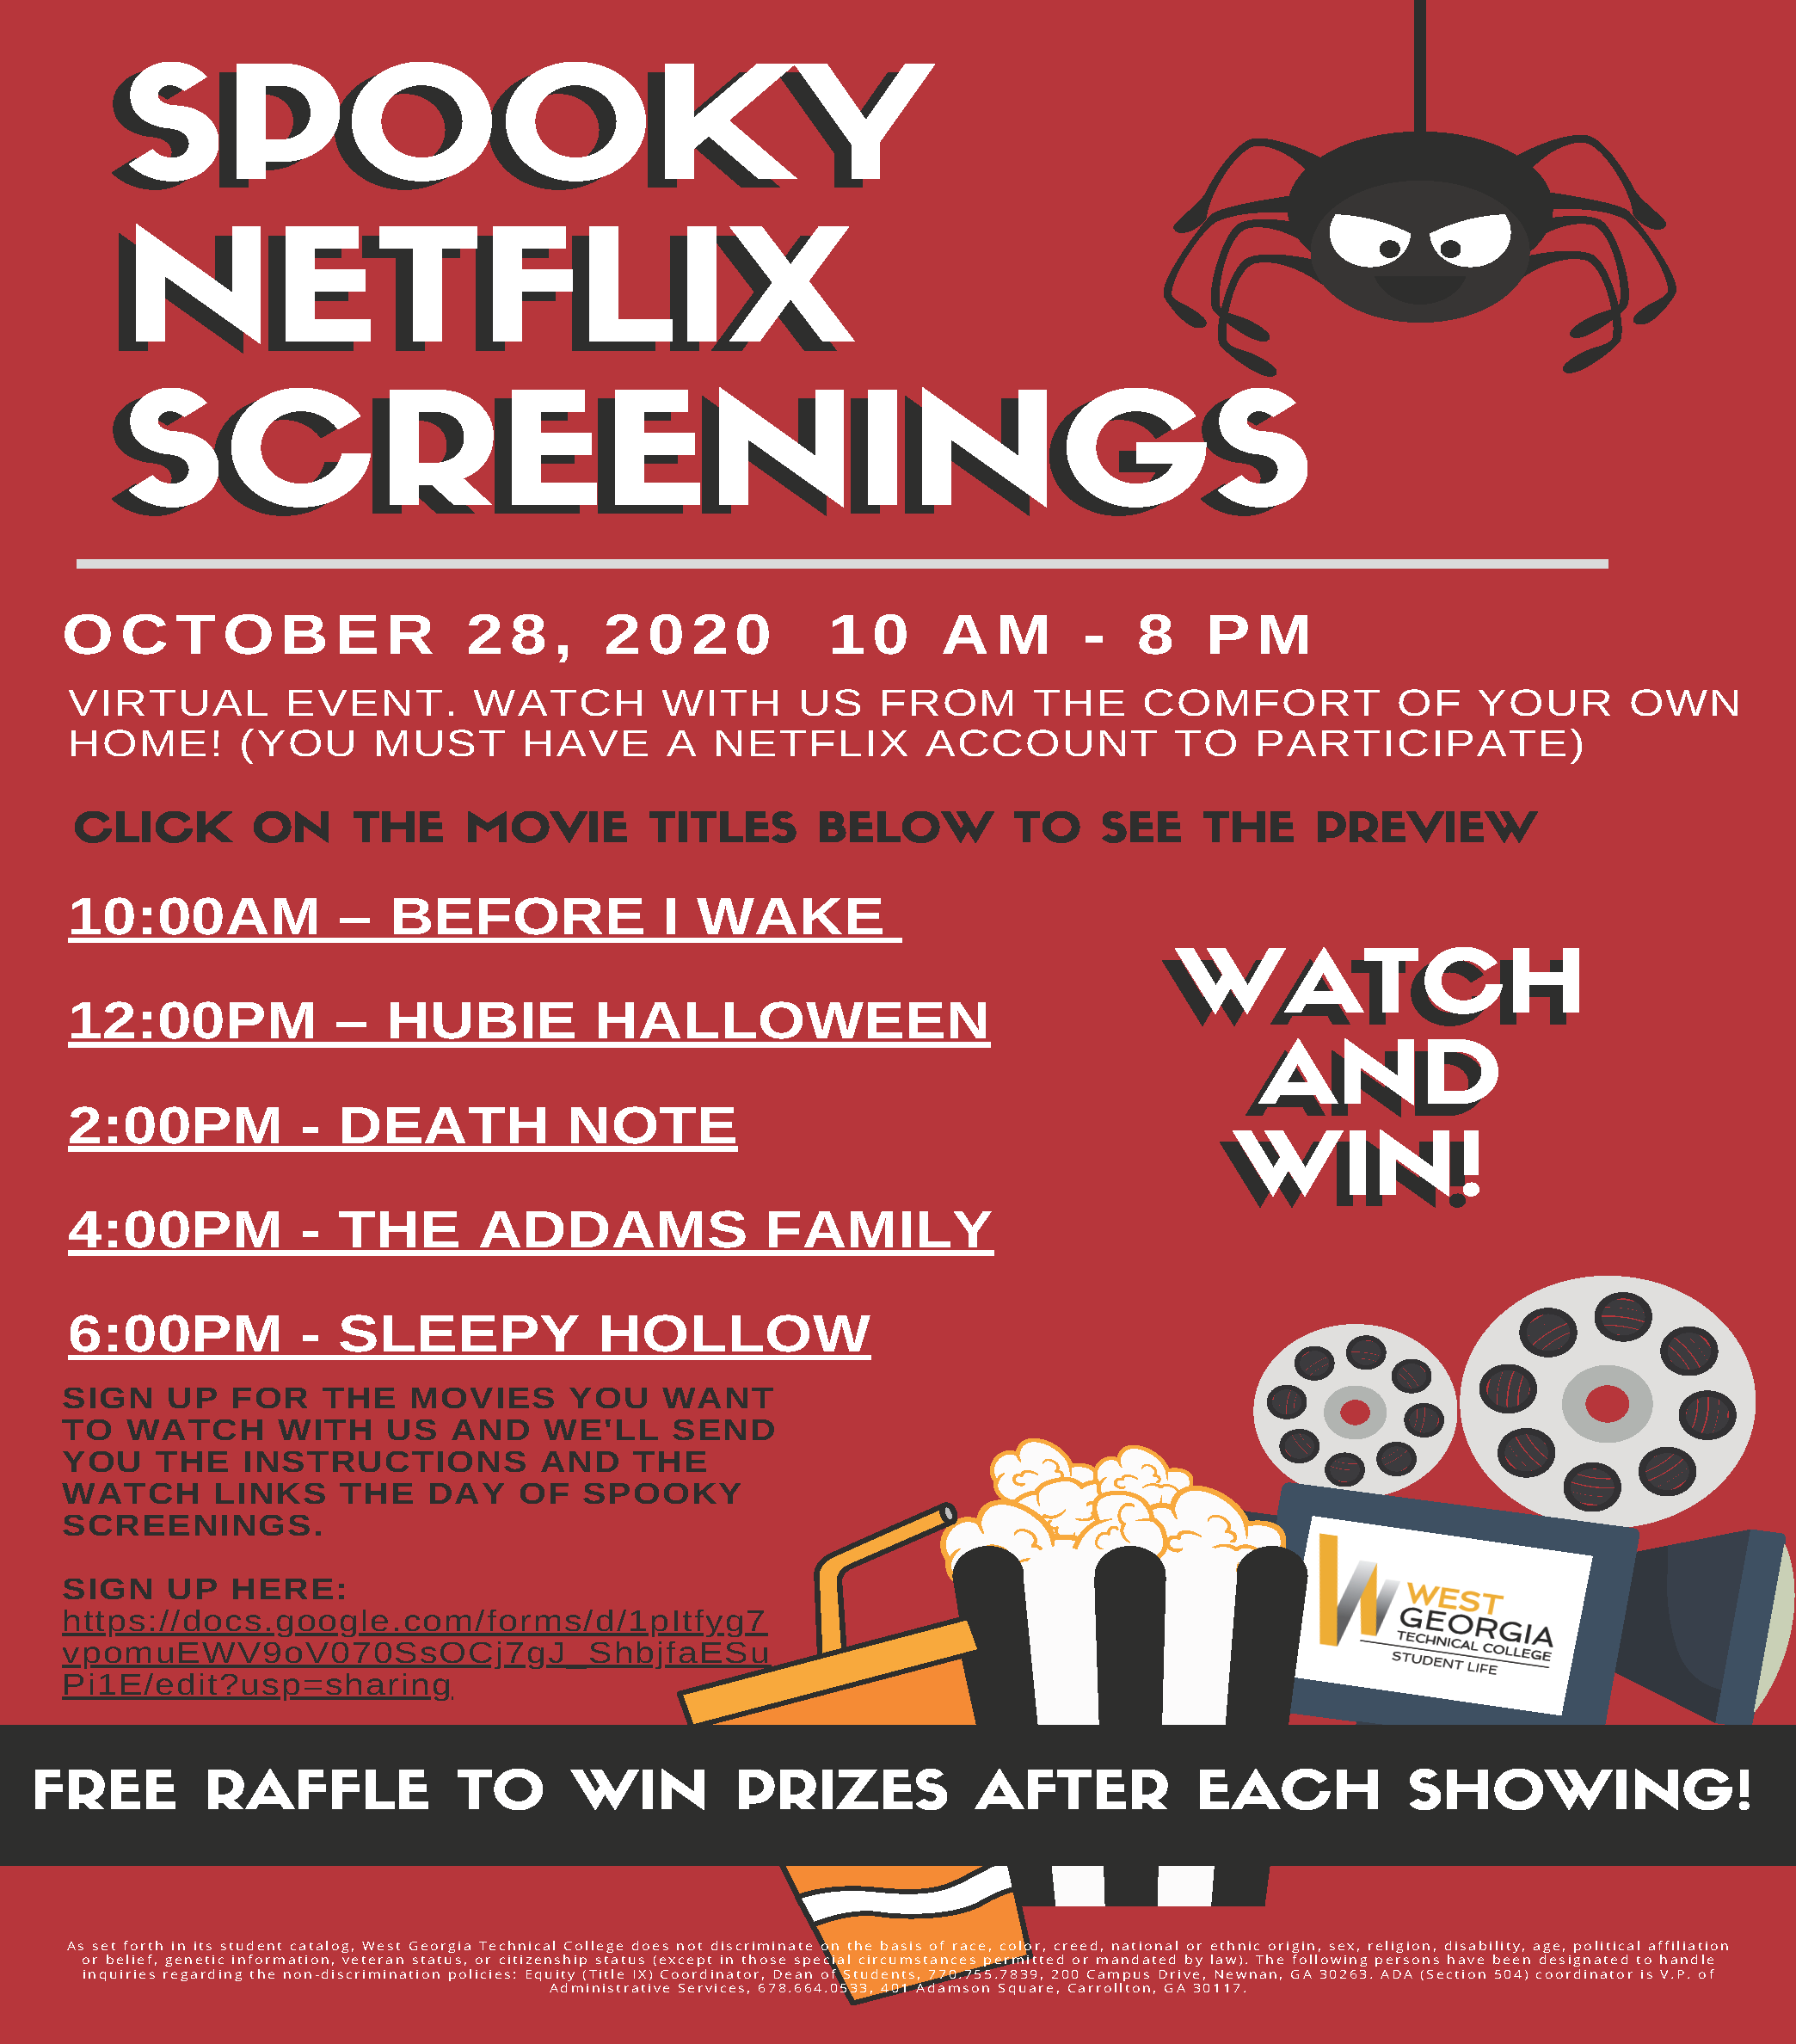 spooky netflix screenings info flyer